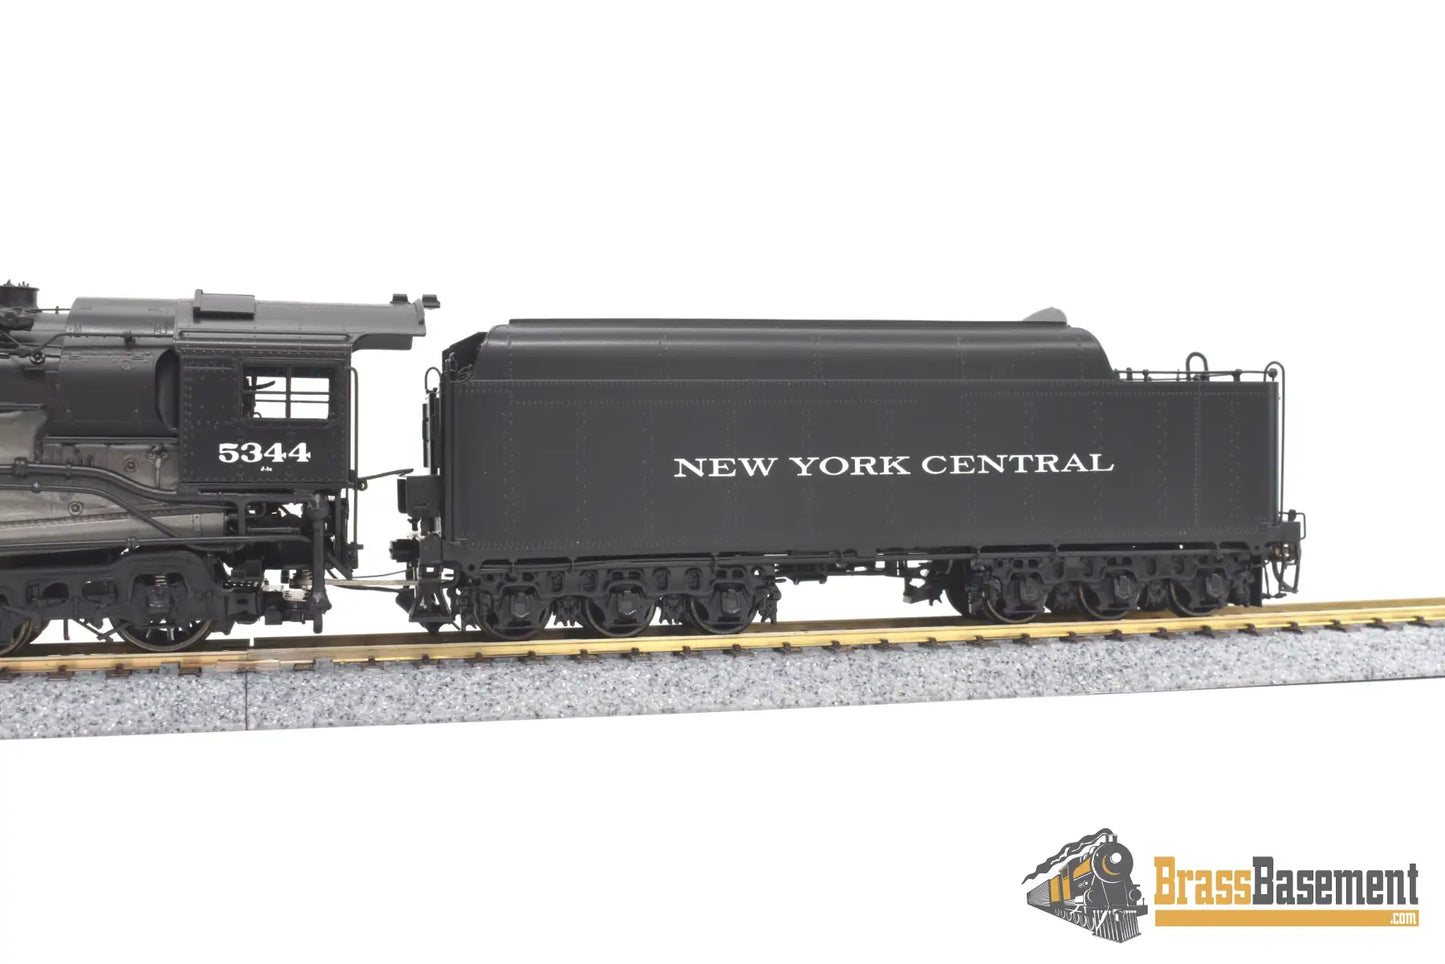 Ho Brass - Omi 4518.1 New York Central Nyc J - 1E 4 - 6 - 4 Hudson #5344 F/P Steam